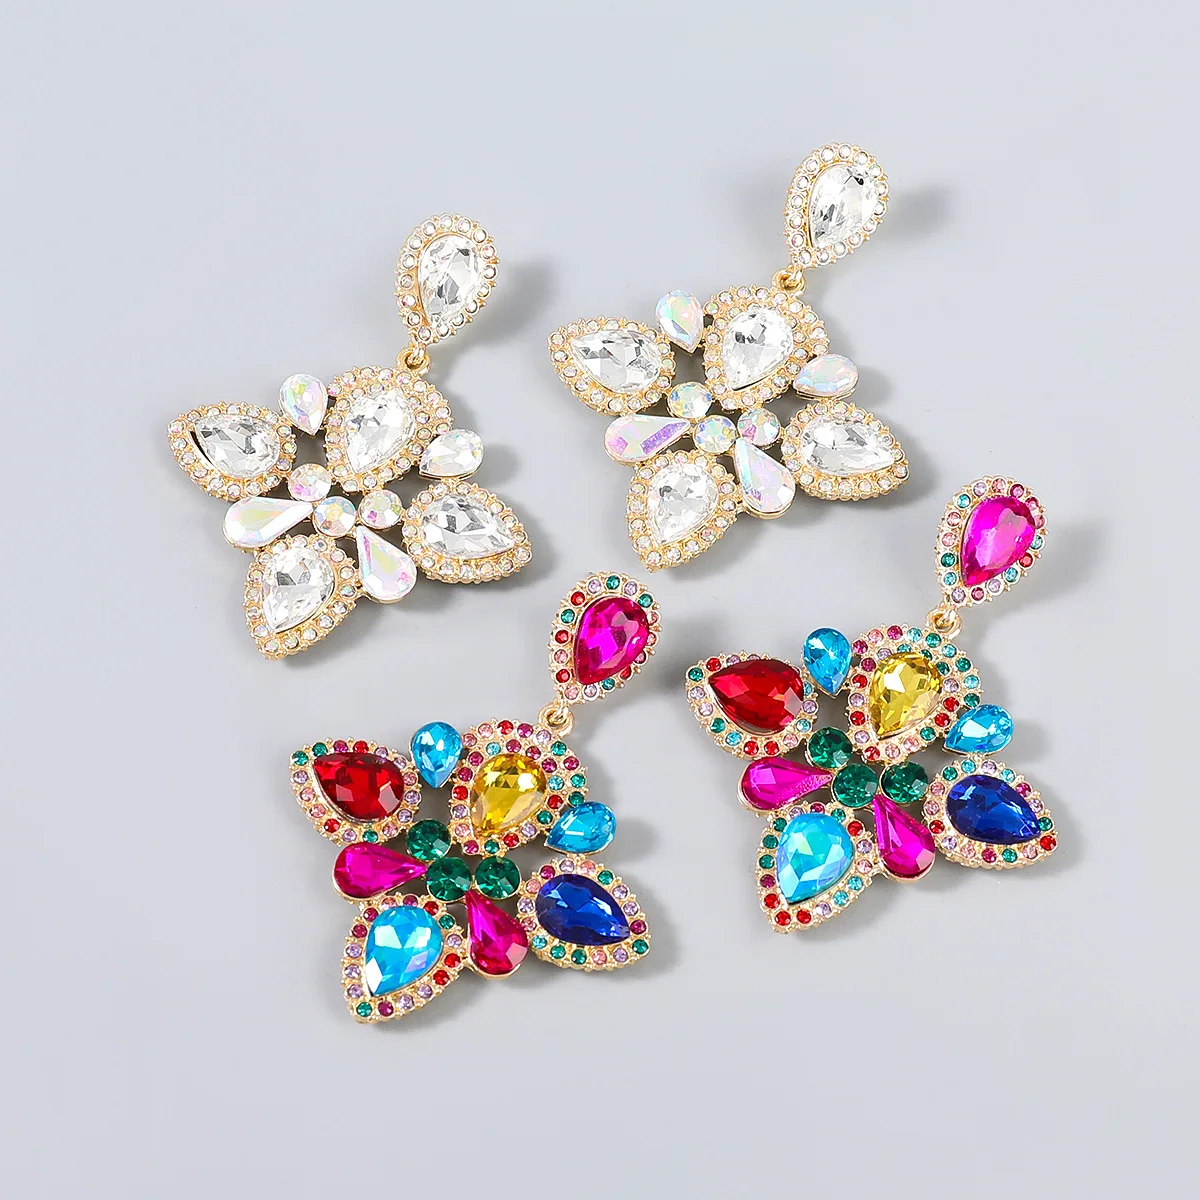 

Multicolor Luxury Women Drop Earrings Fashion Delicate Statement Dangle Earrings High Quality Wedding Party Bijoux Jewelry HT152